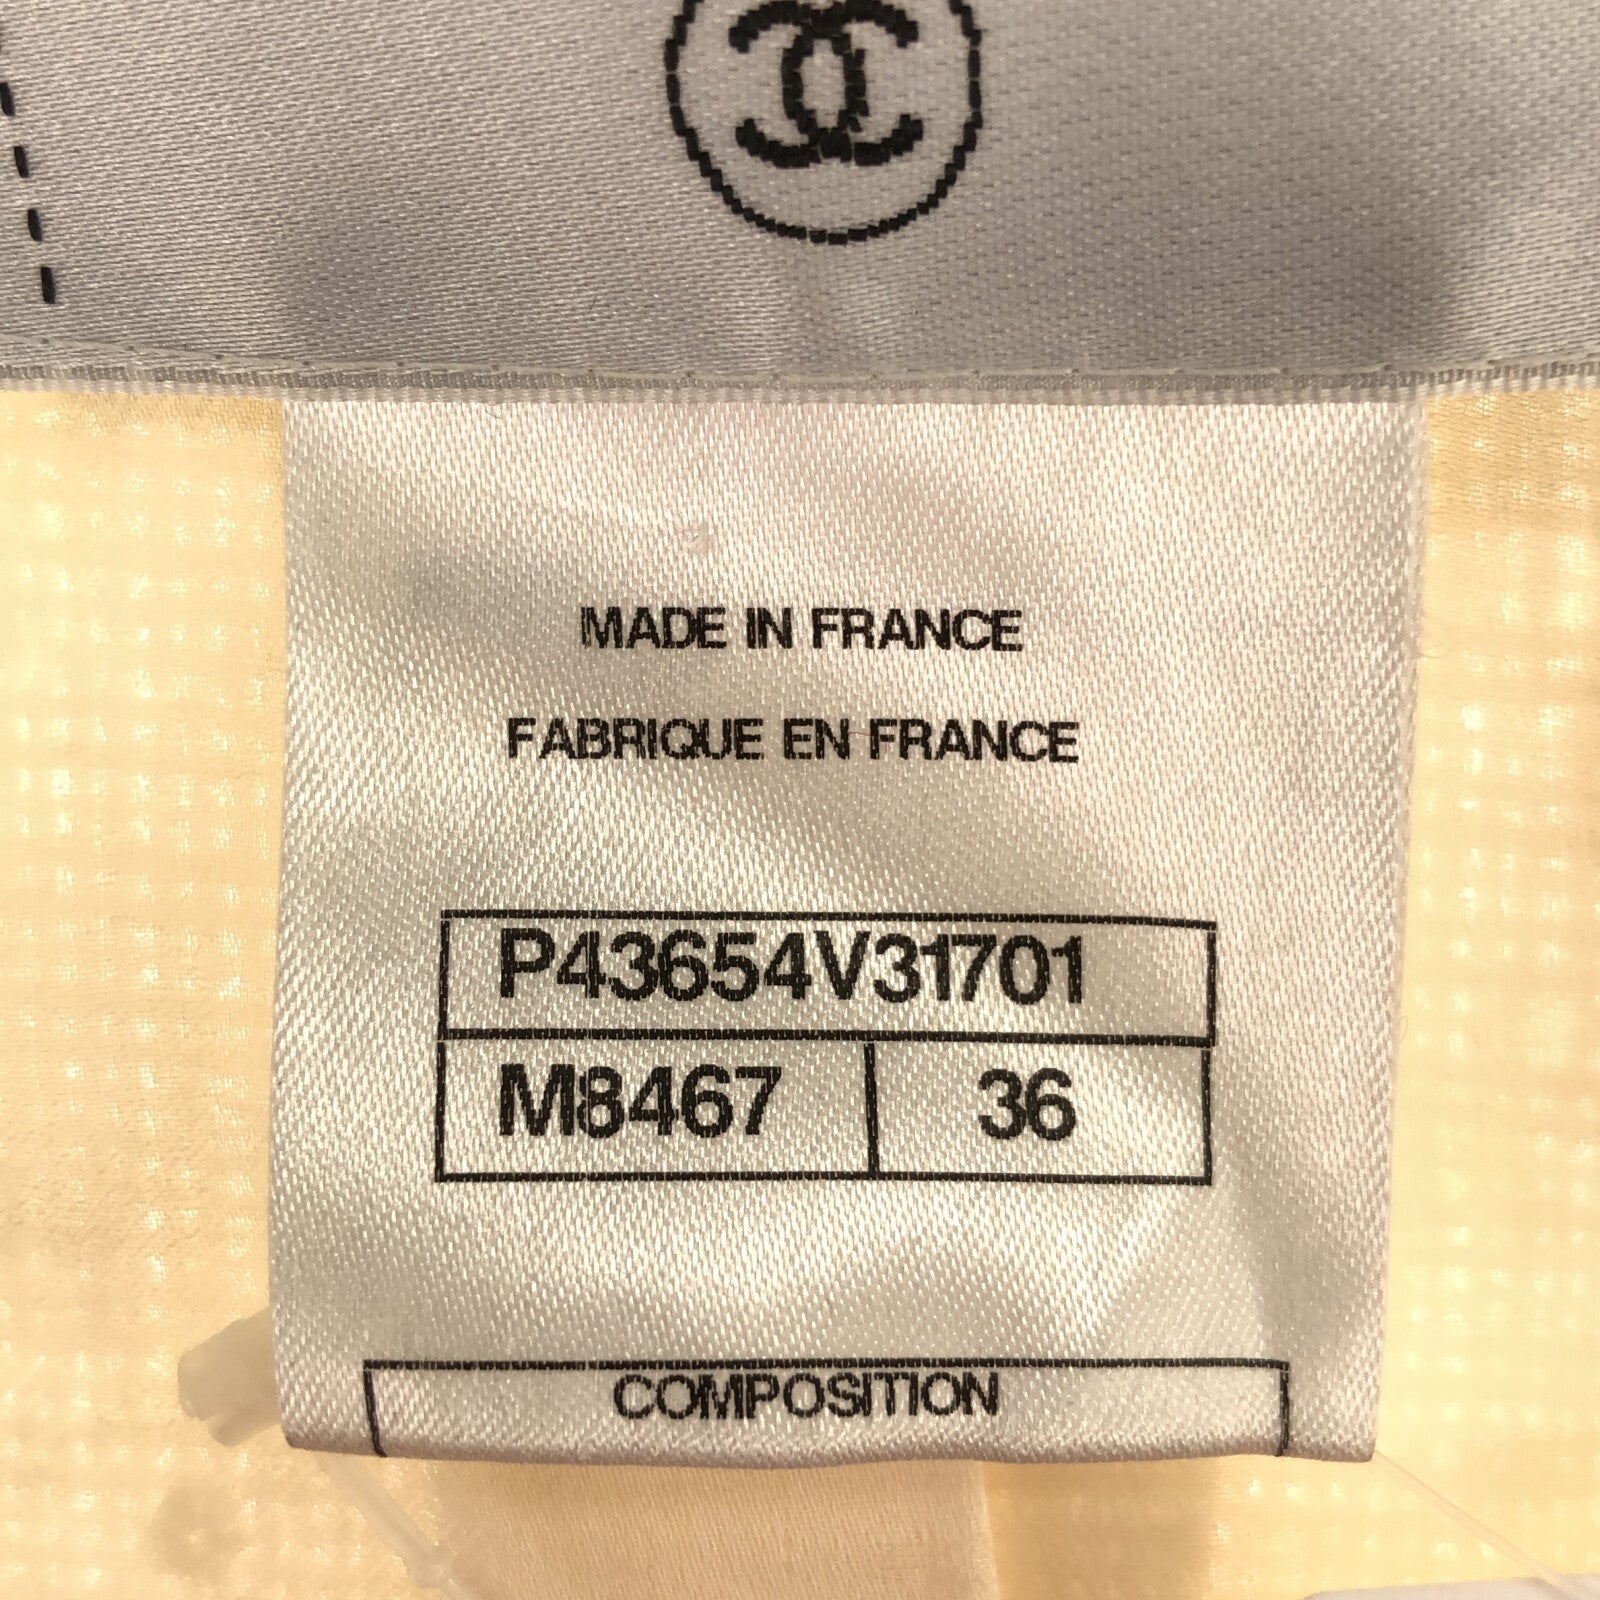 Chanel Jacket  Cotton  White P43654V31701